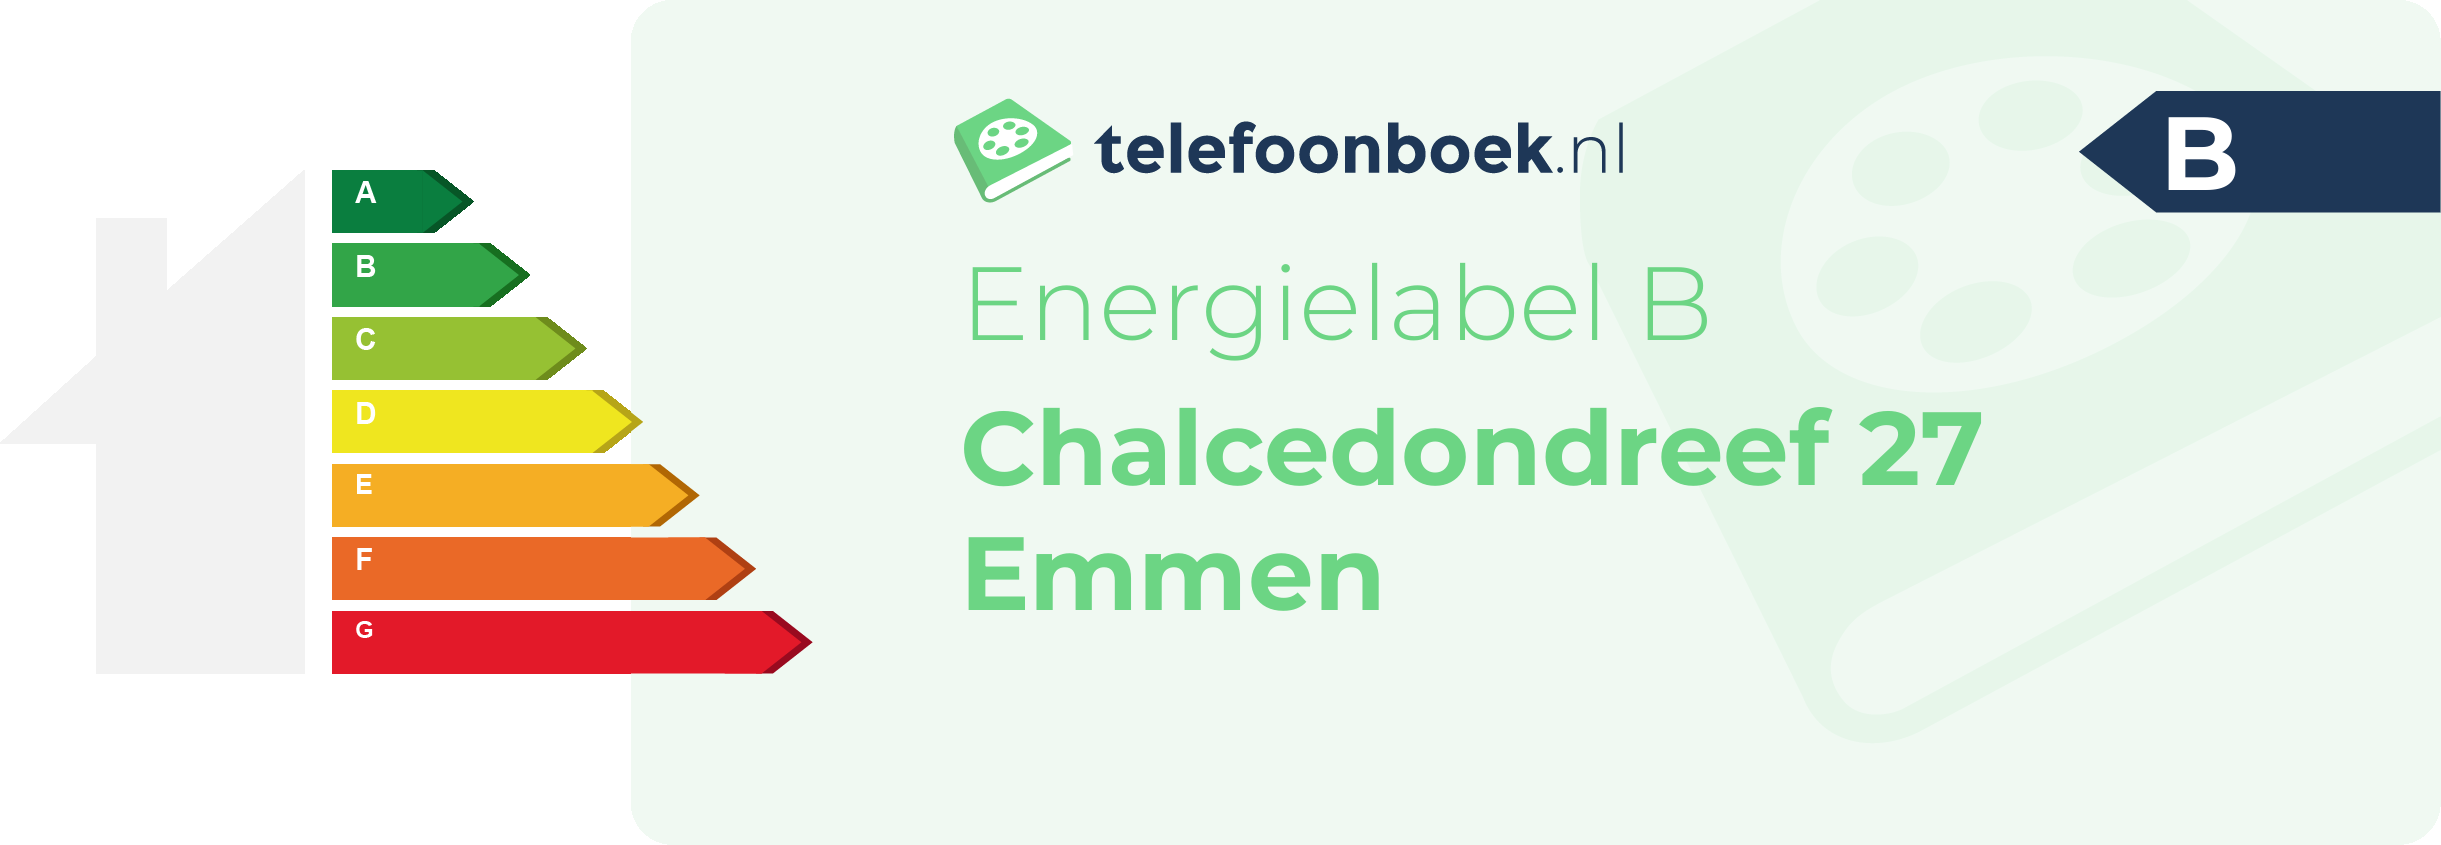 Energielabel Chalcedondreef 27 Emmen